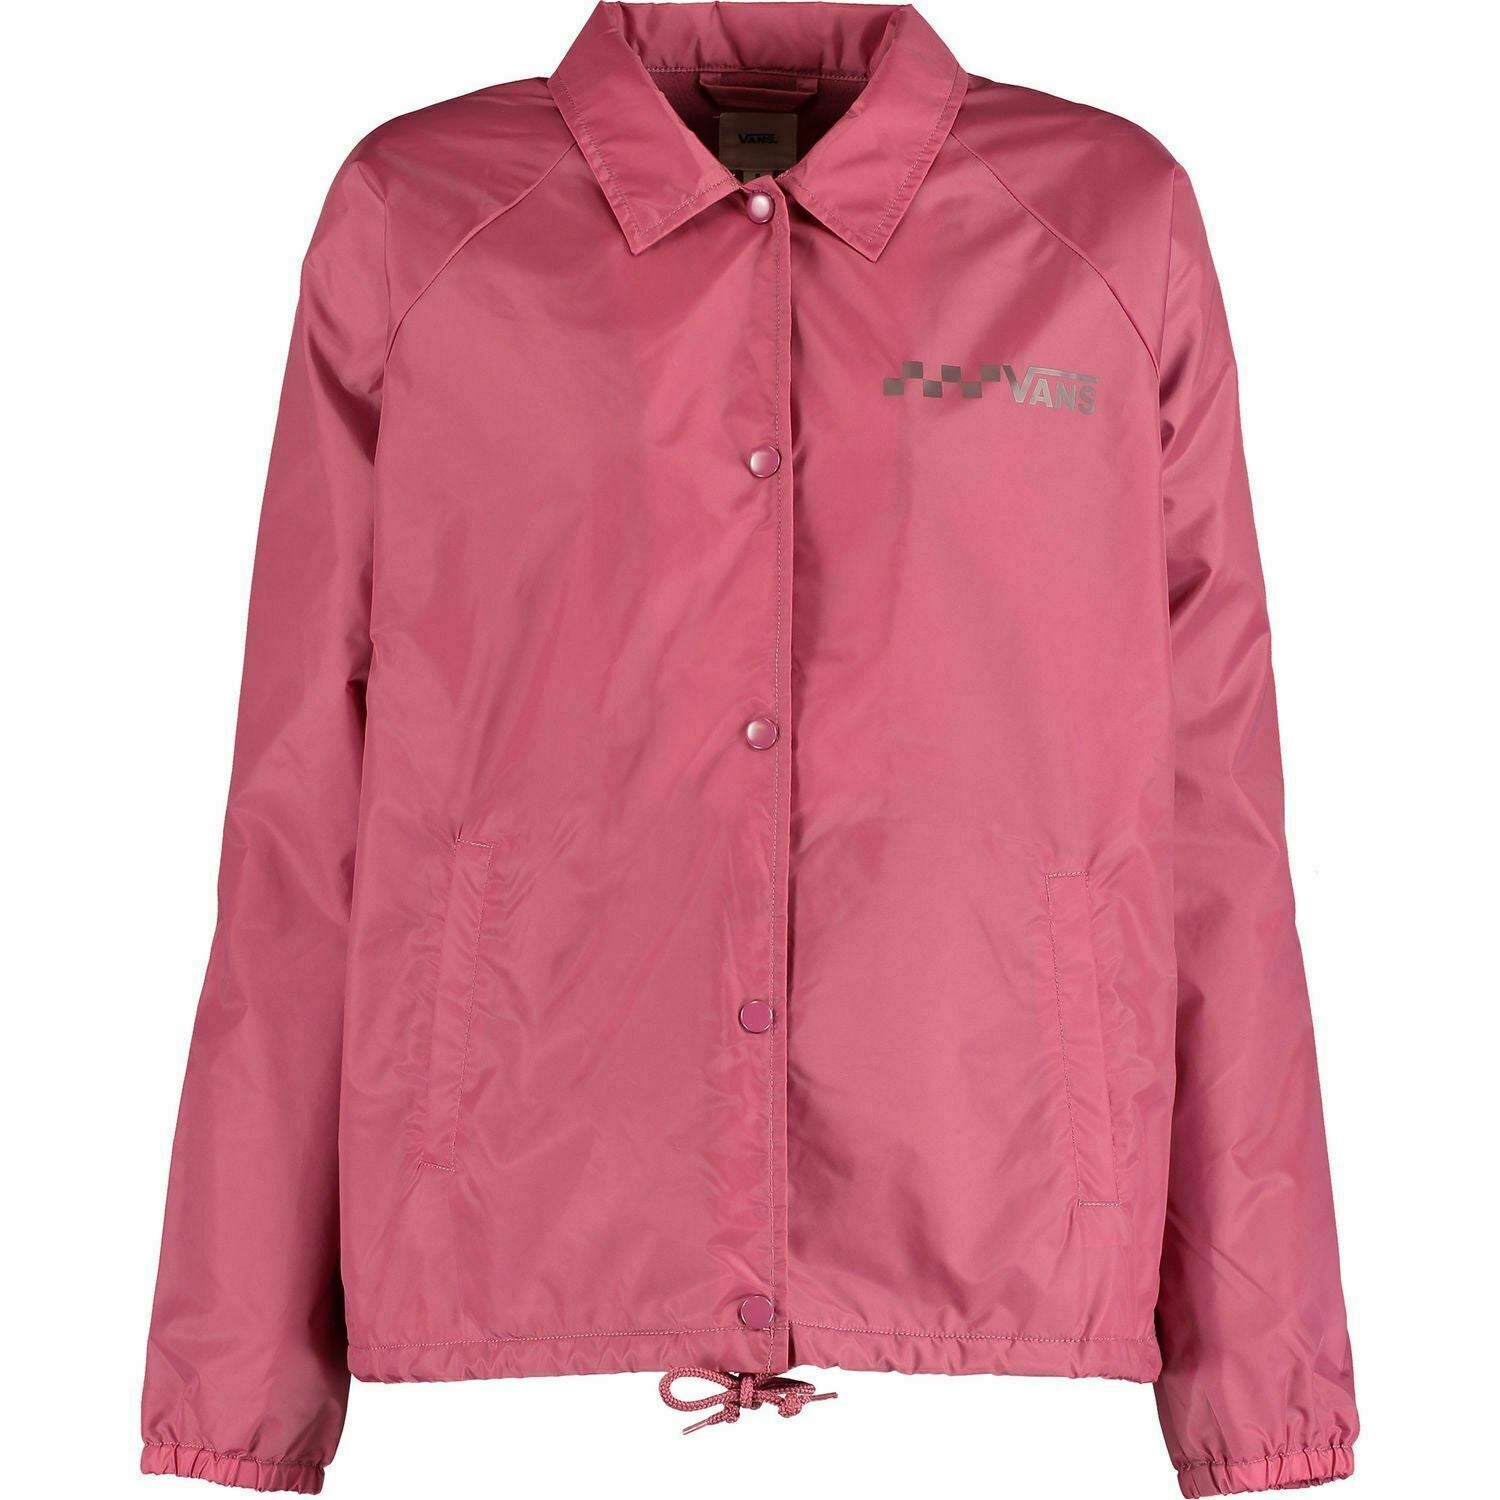 VANS Women's COACH Lightweight Jacket, Dry Rose, size S /size M /size L